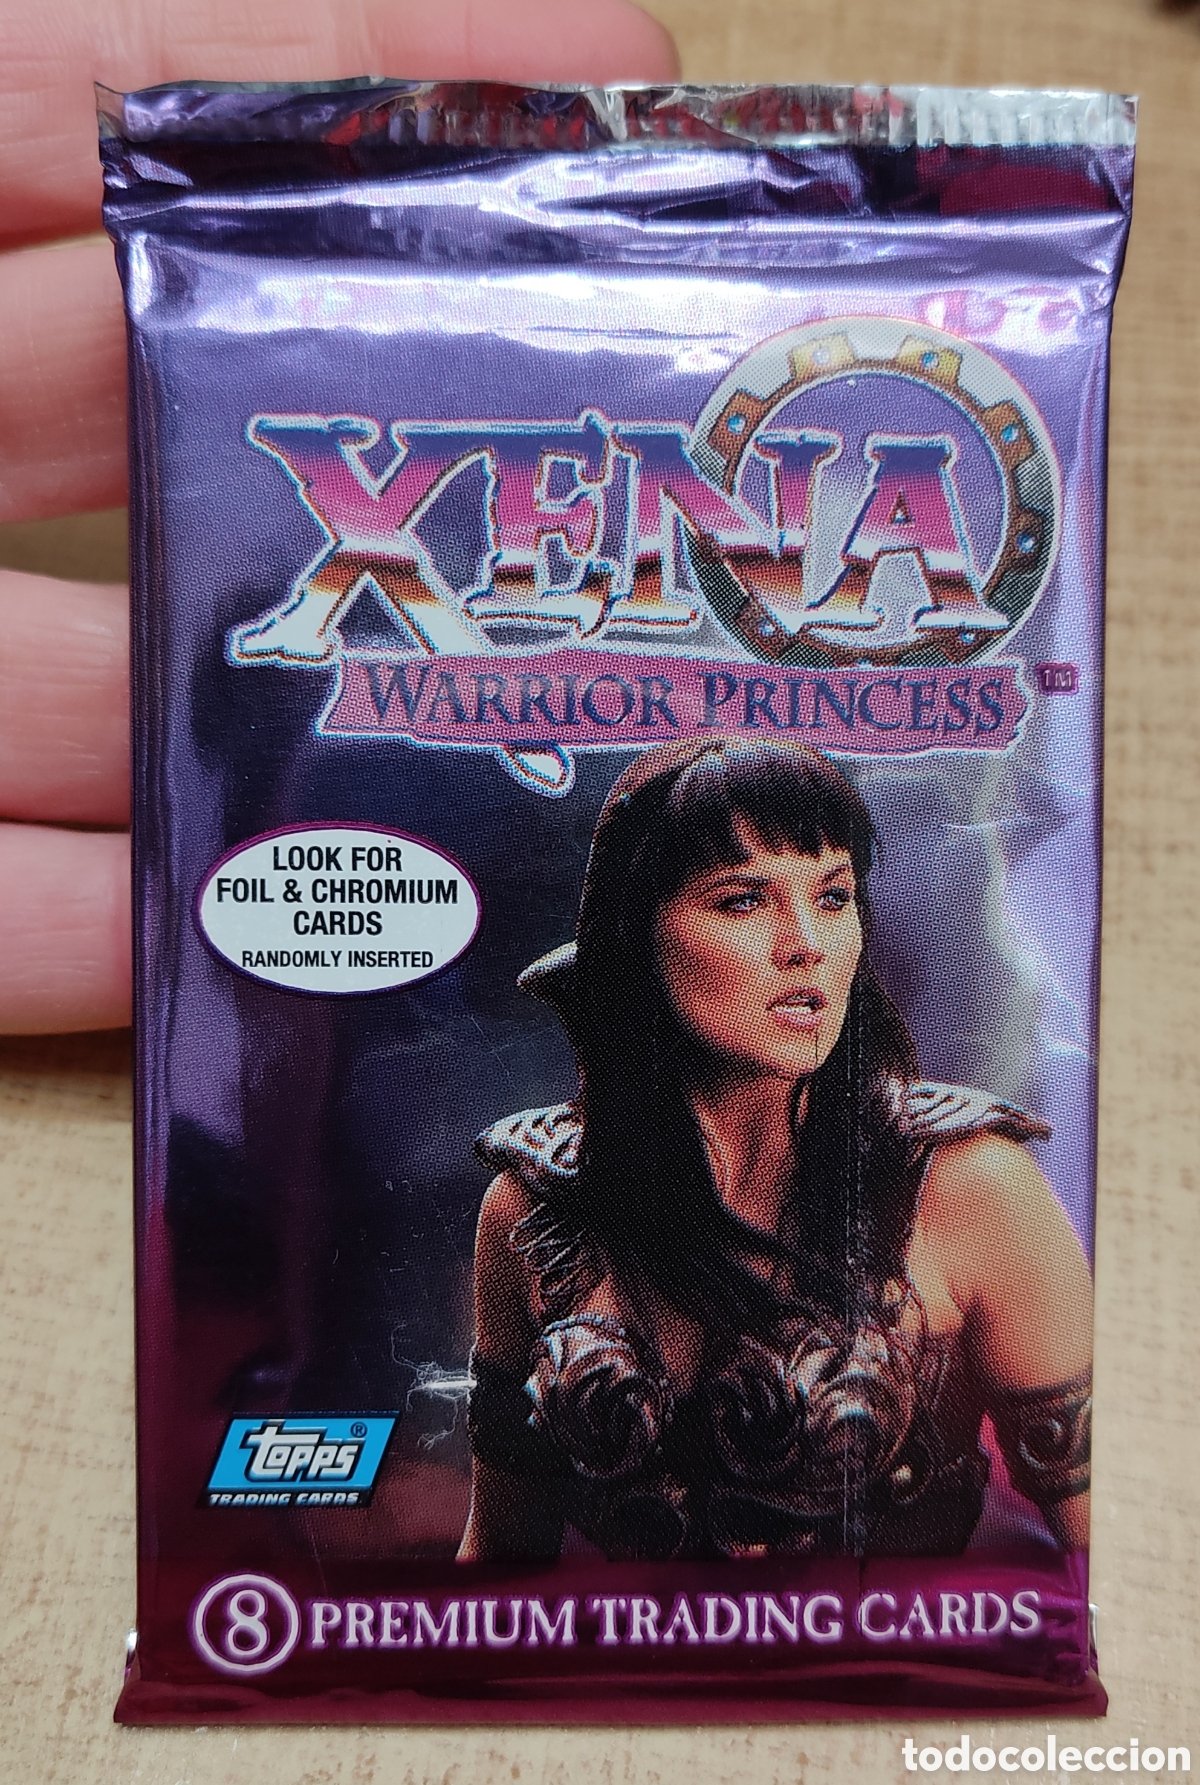 xena - la princesa guerrera - lote 1ª y 2ª temp - Comprar Séries de TV em  DVD no todocoleccion